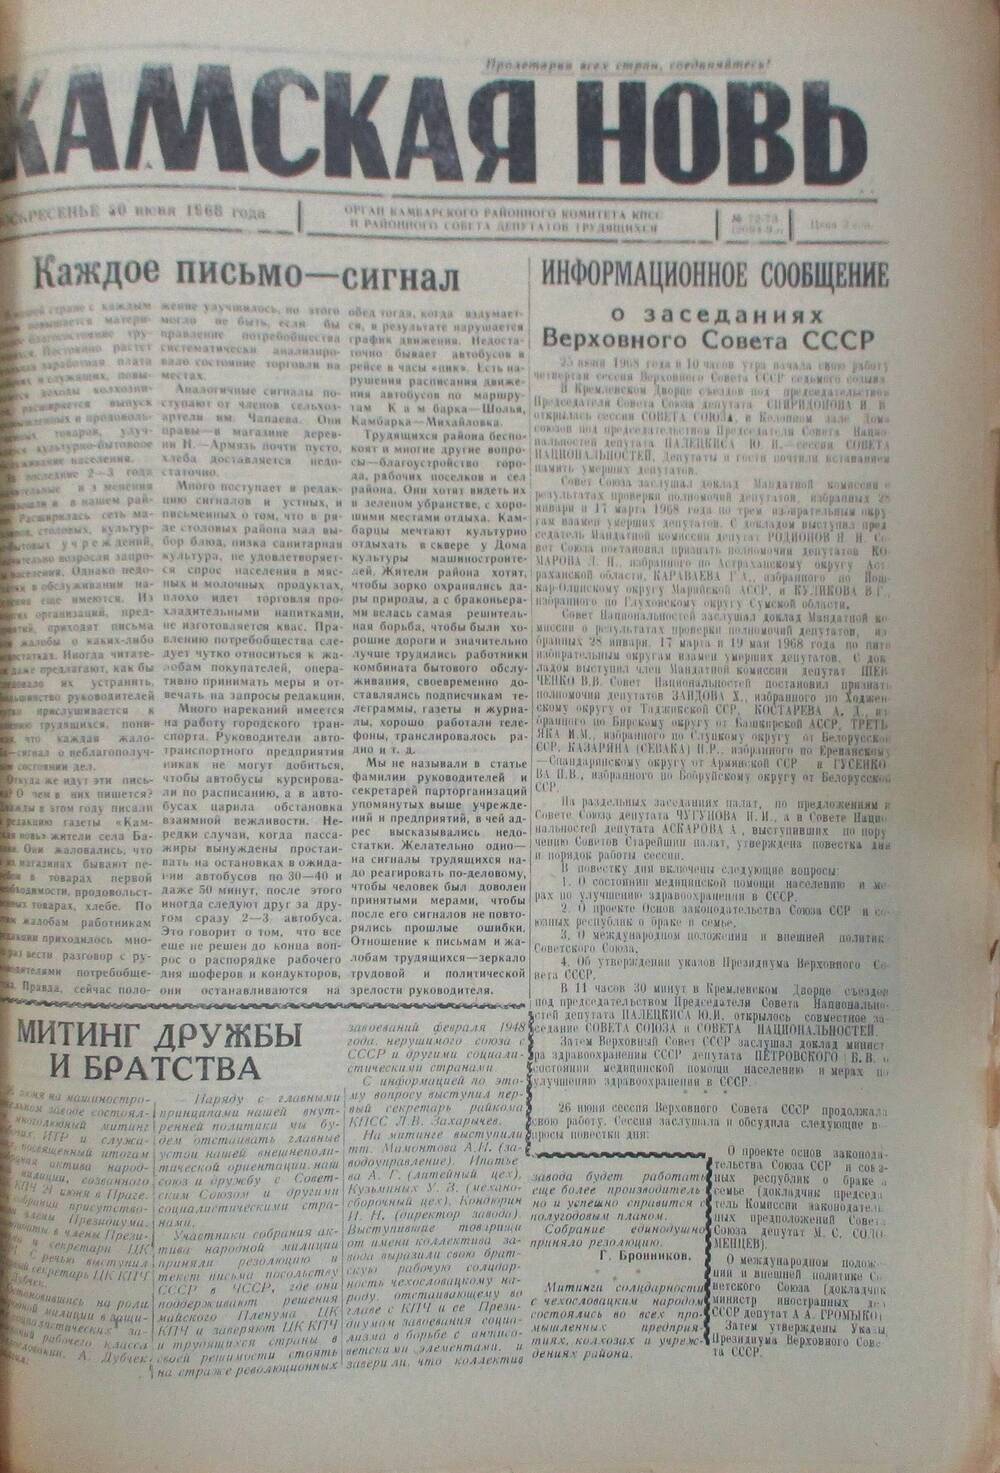 Газета Камская новь за 1968 год, орган Камбарского Райсовета и РККПСС, подшивка с №1 по №150, №72-73.